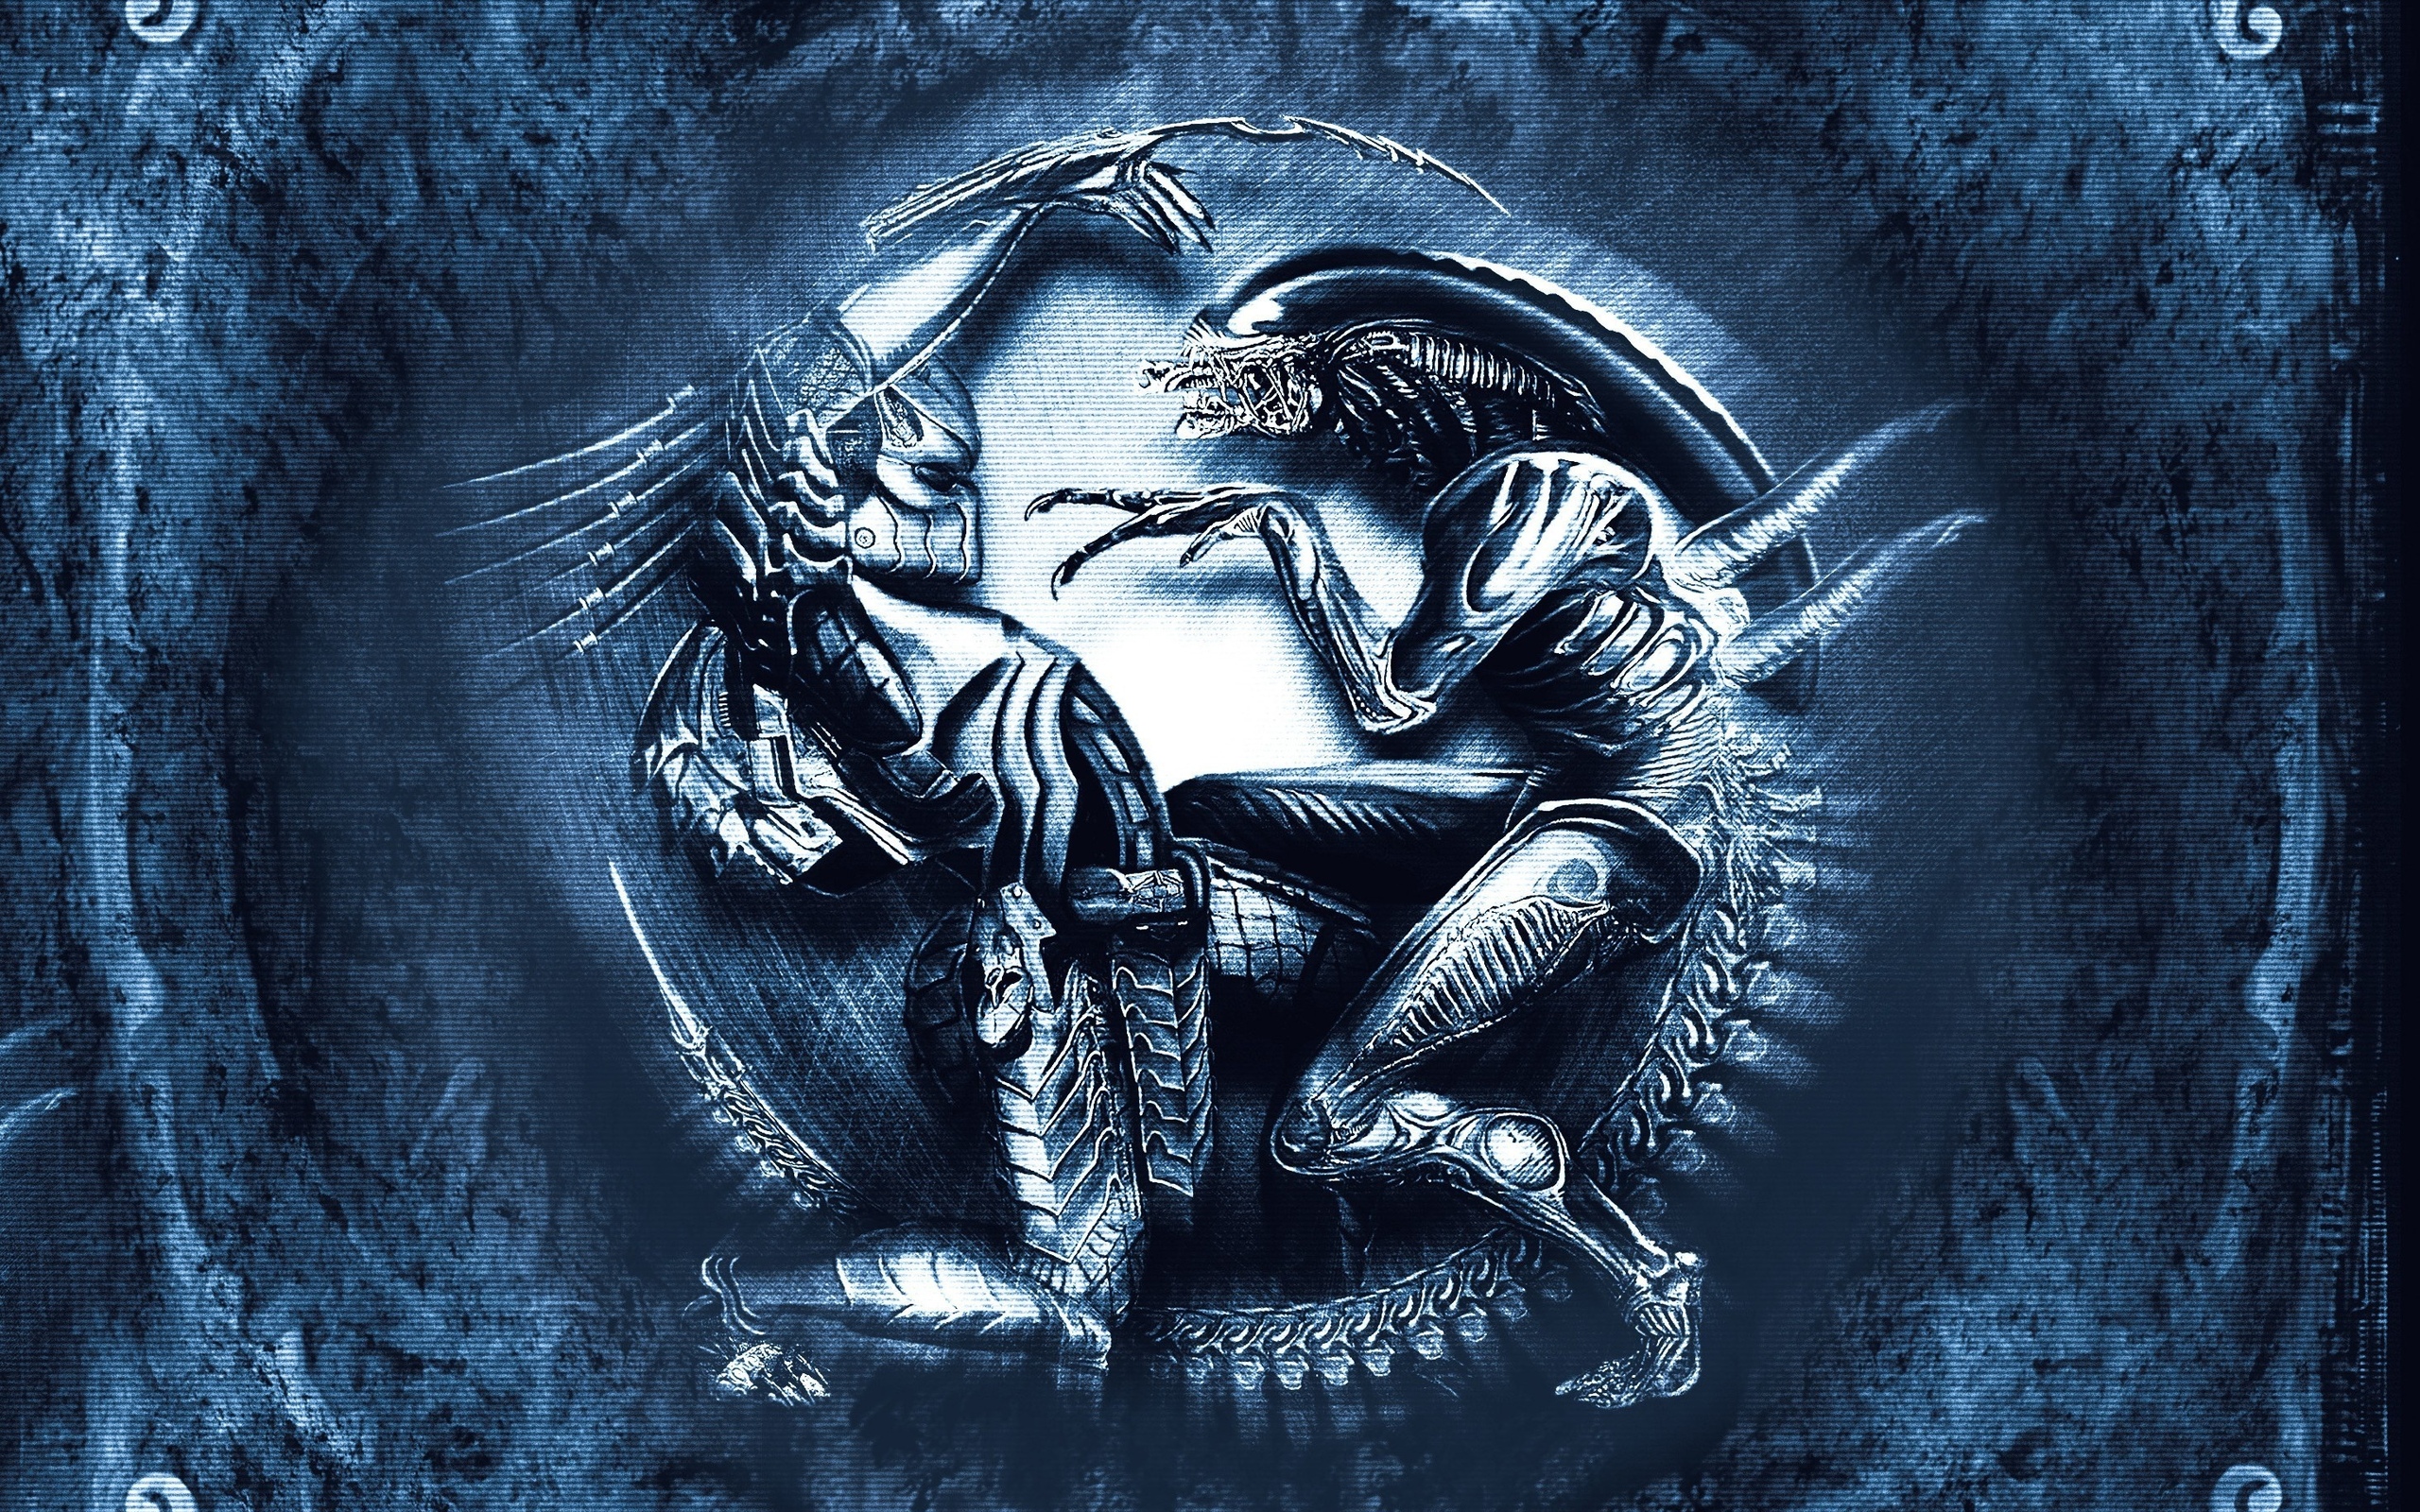 Aliens Vs. Predator Computer Wallpapers, Desktop Backgrounds